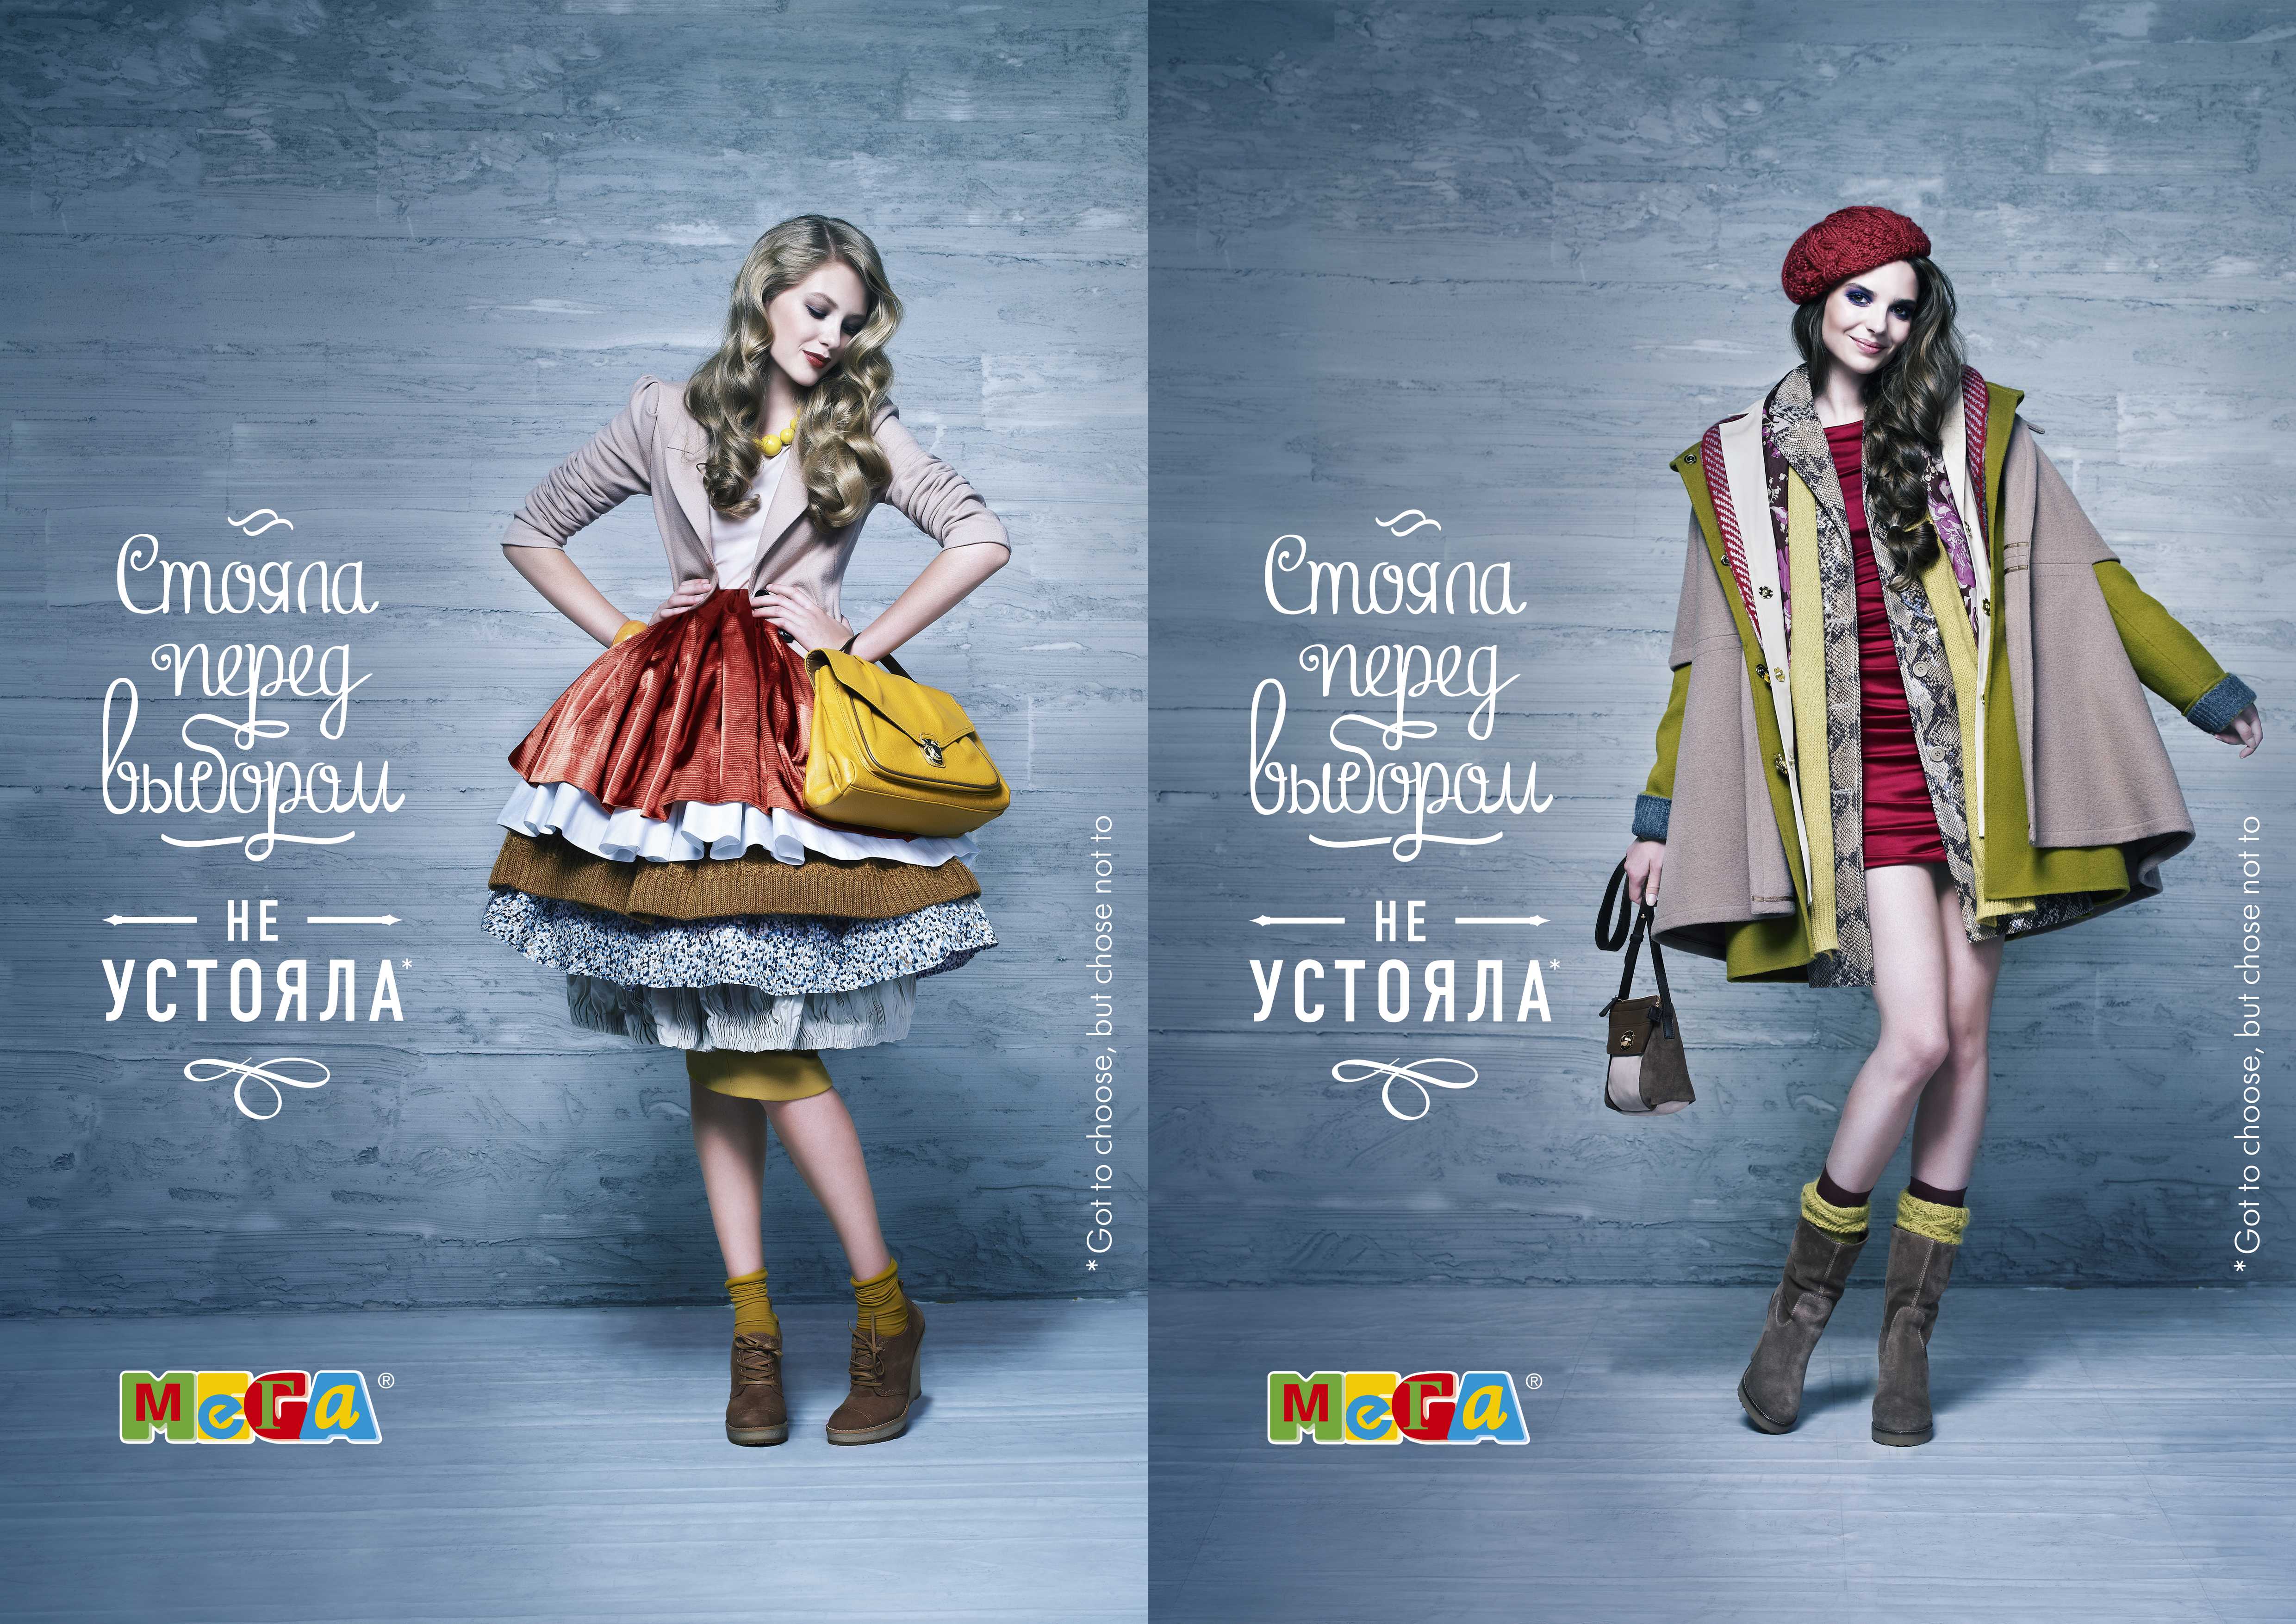 Рекламные плакаты магазинов. Креативная реклама женской одежды. Рекламный плакат одежды. Рекламный плакат женской одежды. Креативная реклама магазина одежды.